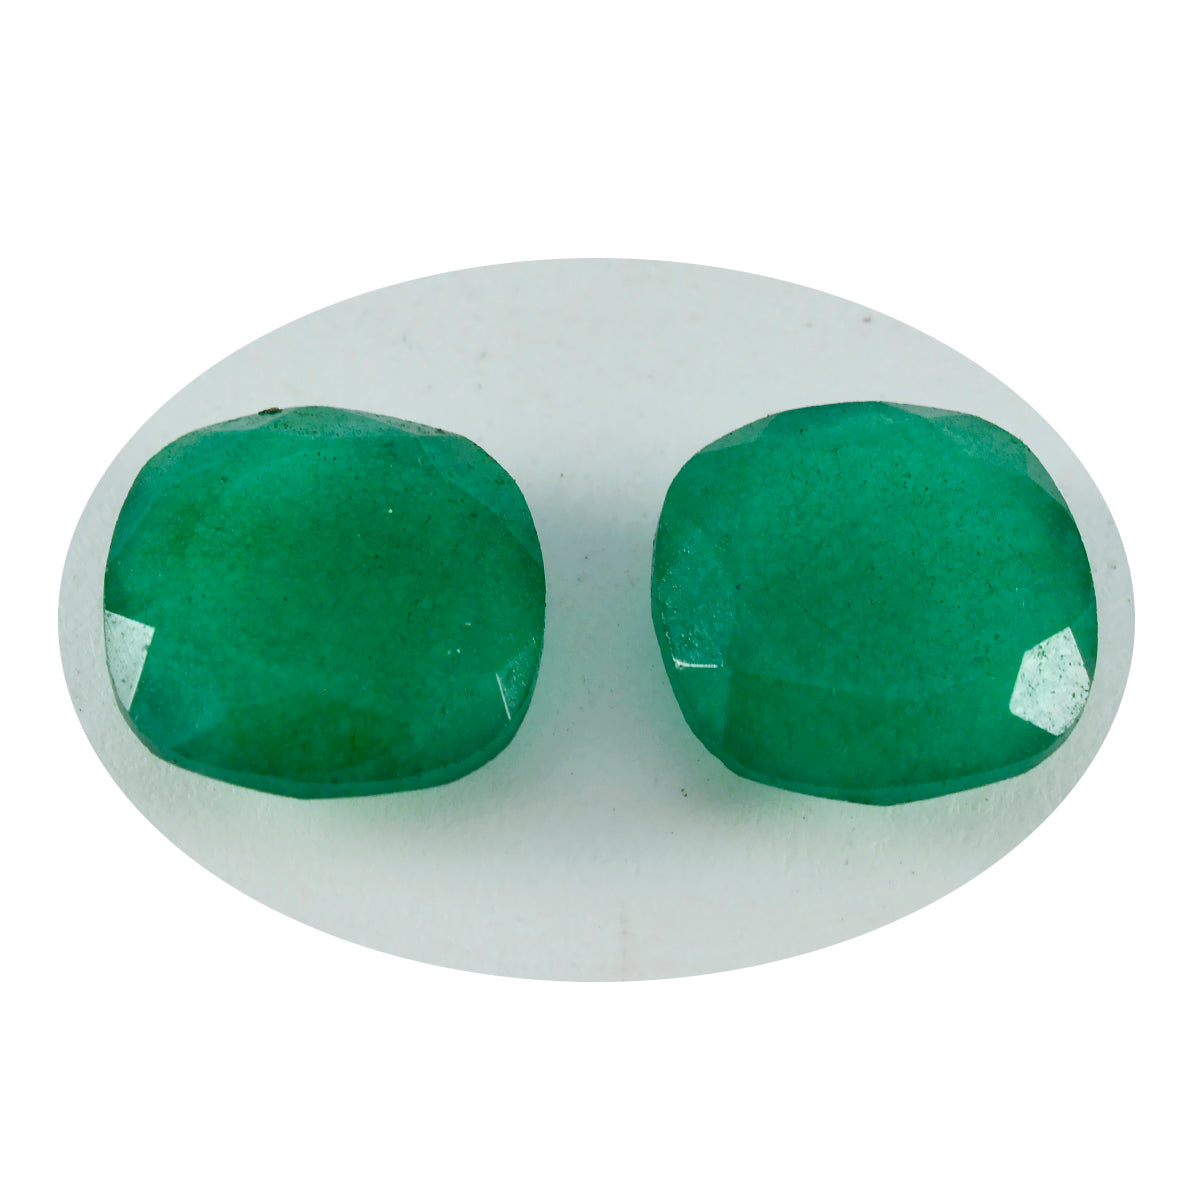 riyogems 1 шт. натуральная зеленая яшма ограненная 11х11 мм в форме подушки красивый качественный свободный драгоценный камень